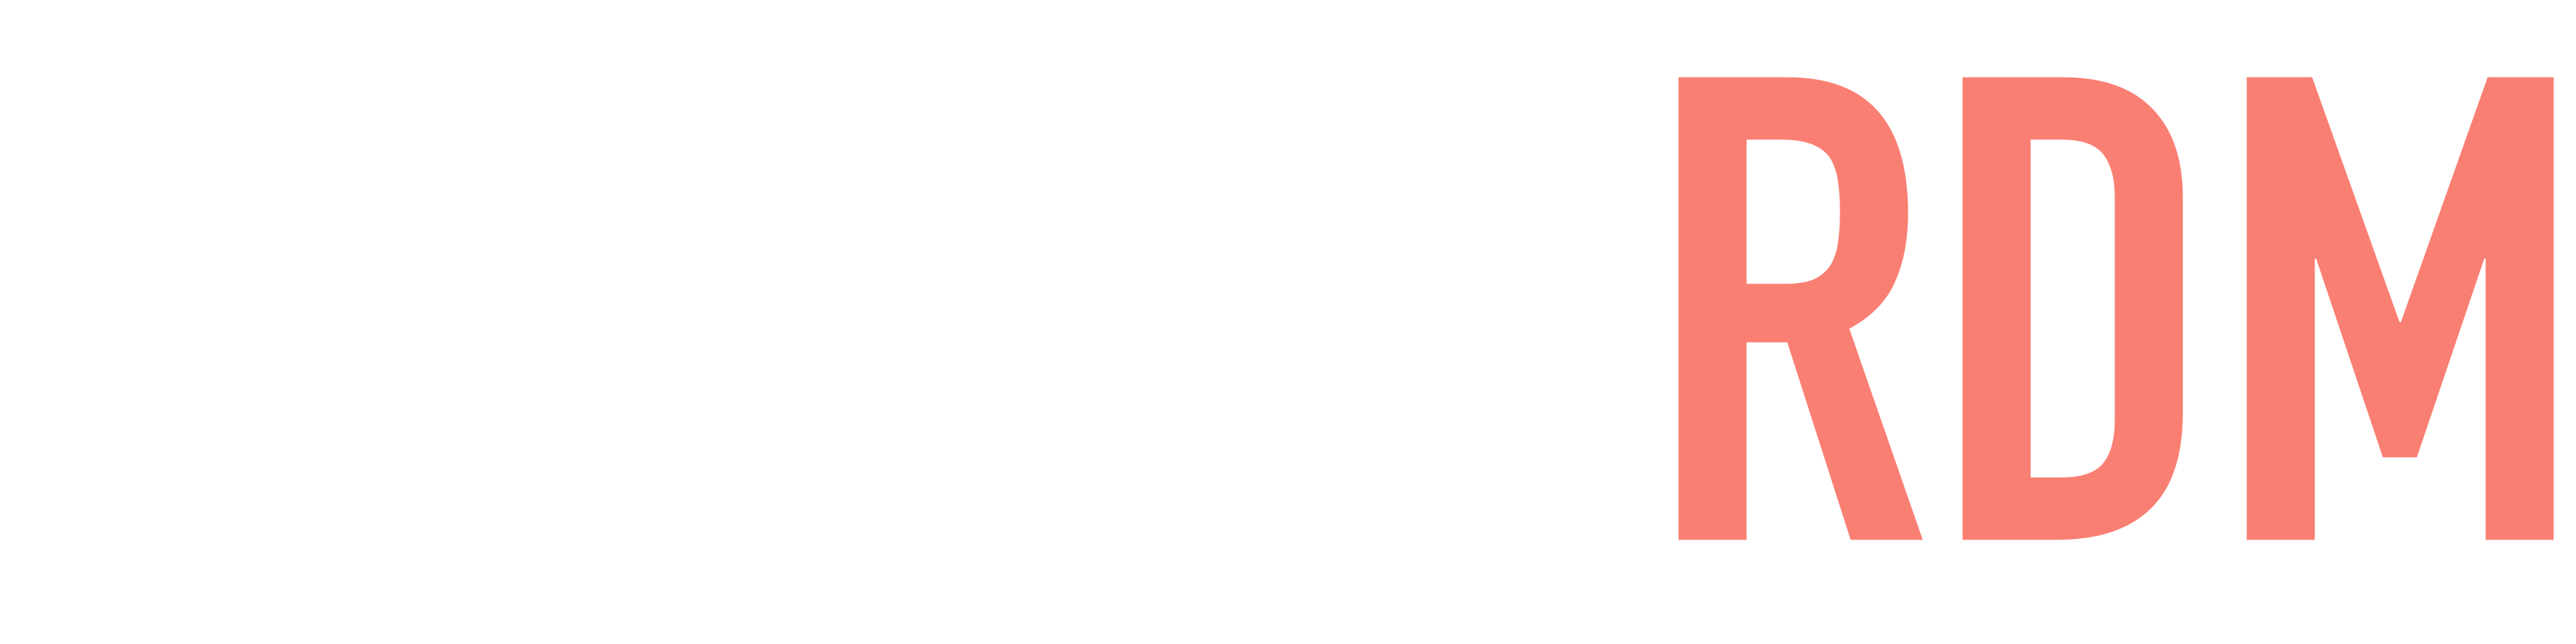 Logo of Invenio RDM